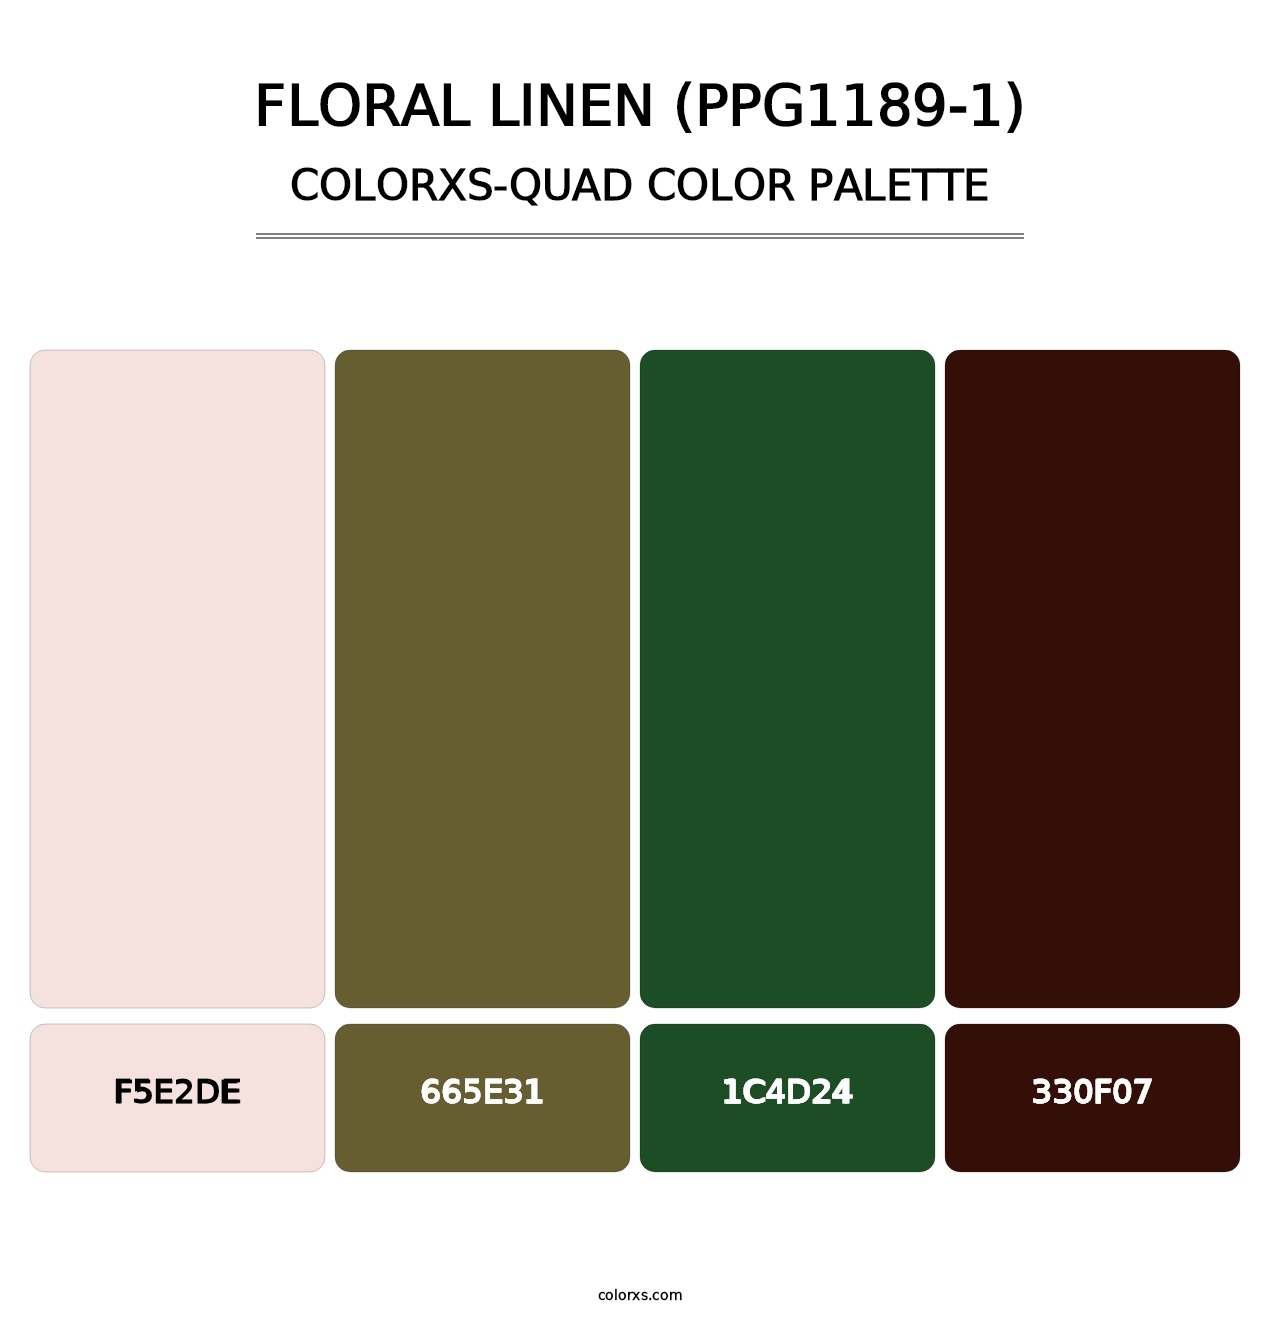 Floral Linen (PPG1189-1) - Colorxs Quad Palette